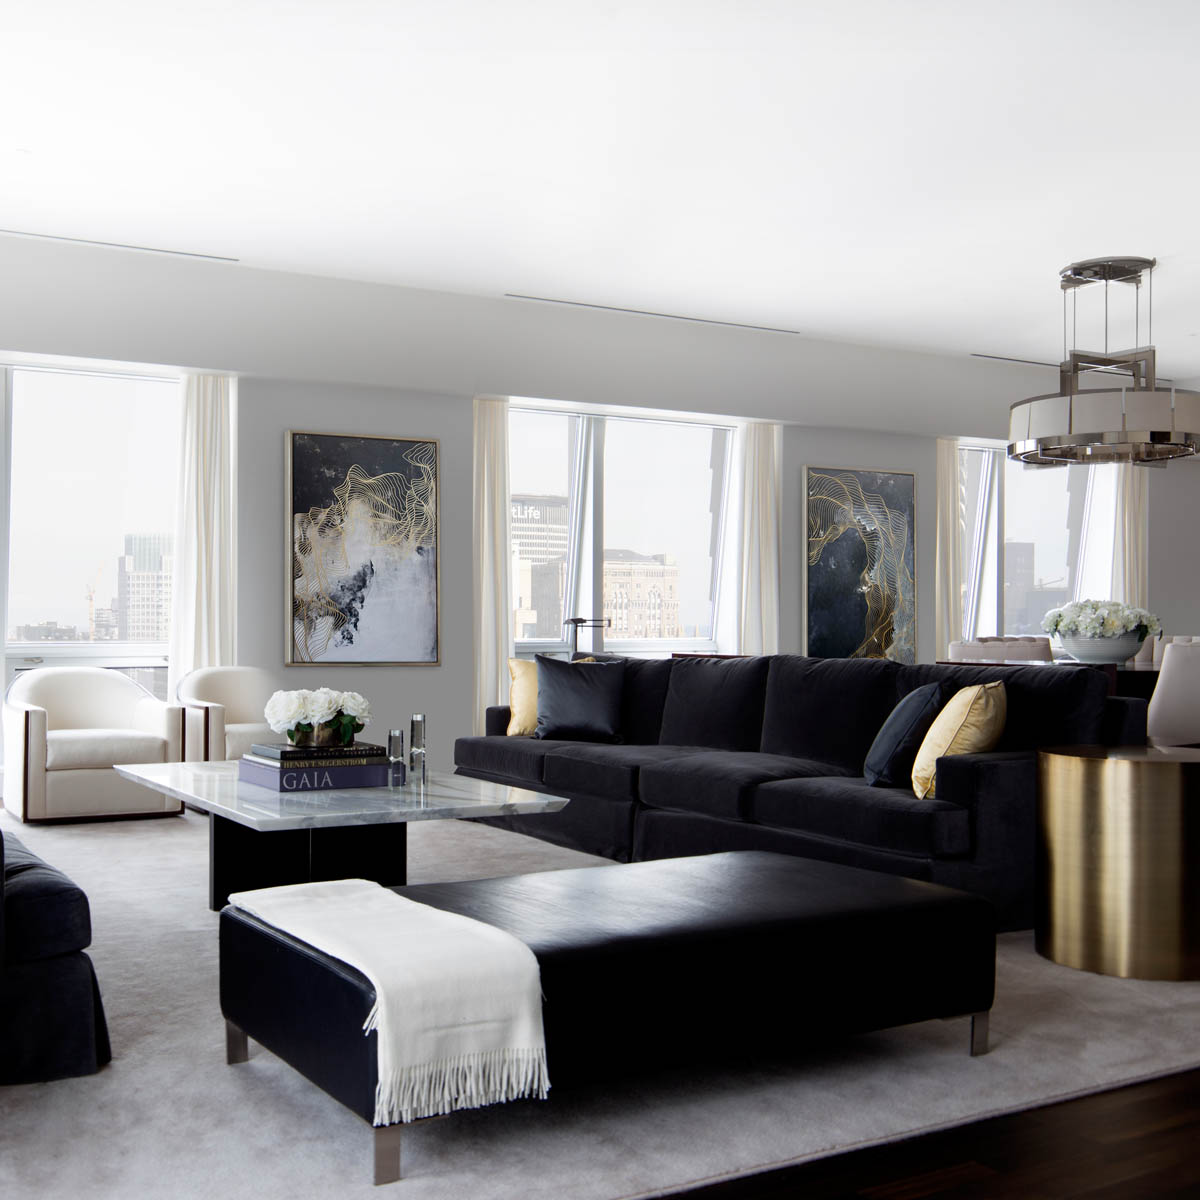 nyc_interior_designer_erika_flugger_5th_avenue_luxury_penthouse